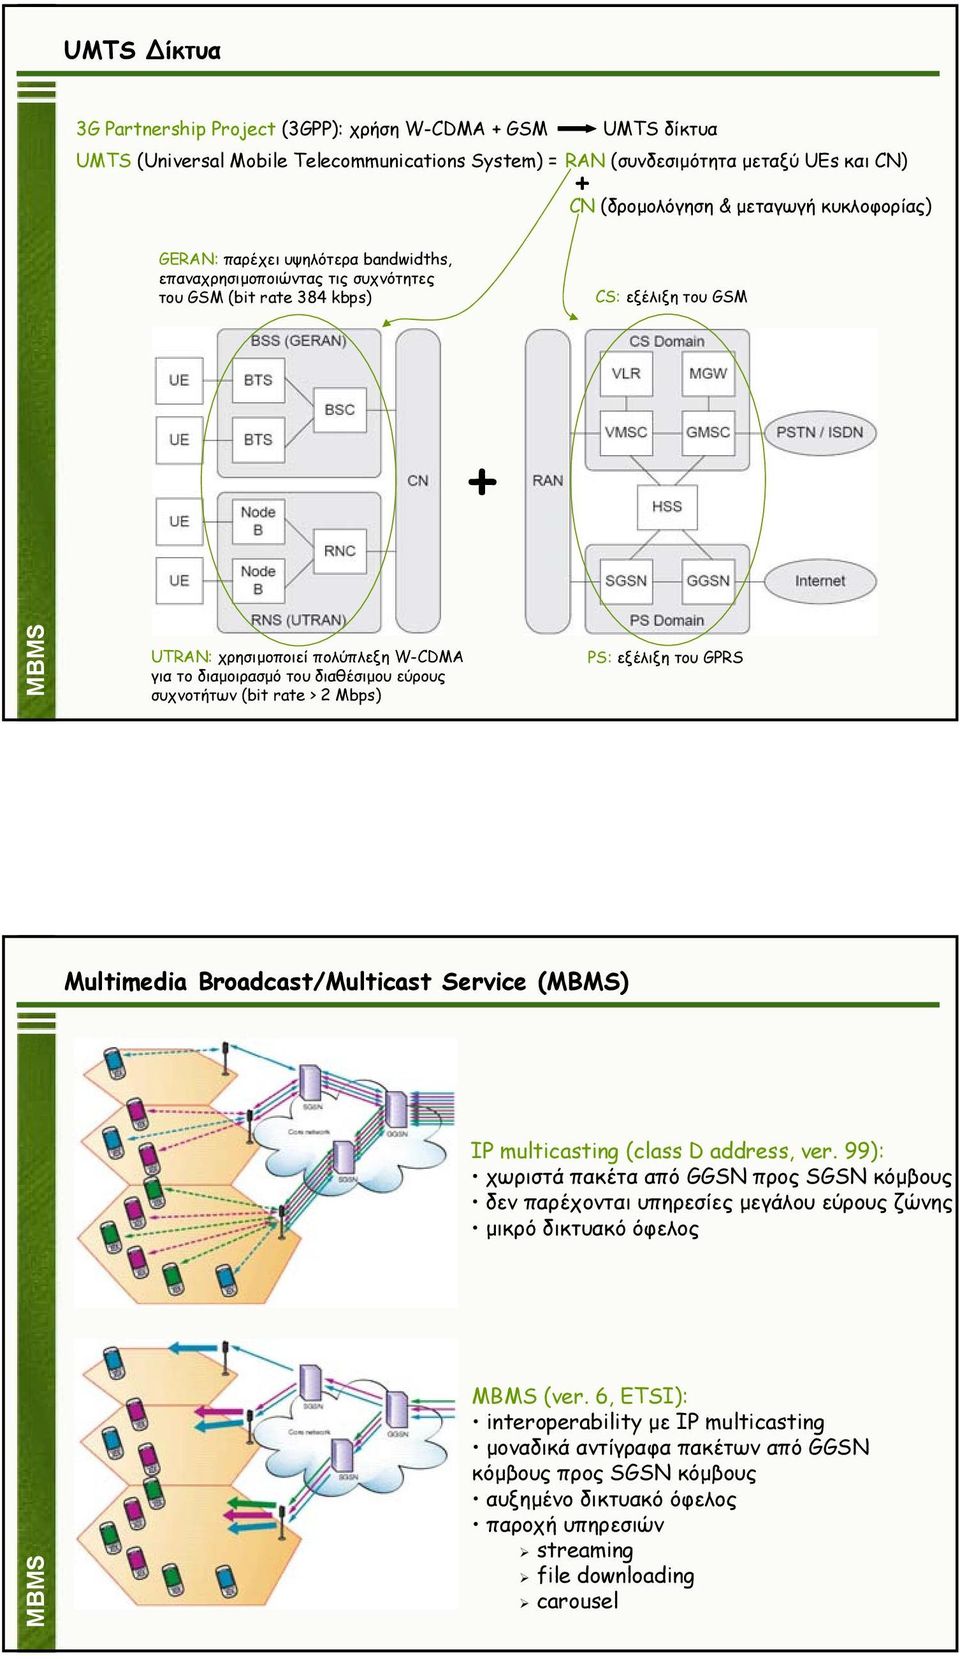 του διαθέσιµου εύρους συχνοτήτων (bit rate > 2 Mbps) PS: εξέλιξη του GPRS Multimedia Broadcast/Multicast Service (MBMS) IP multicasting (class D address, ver.